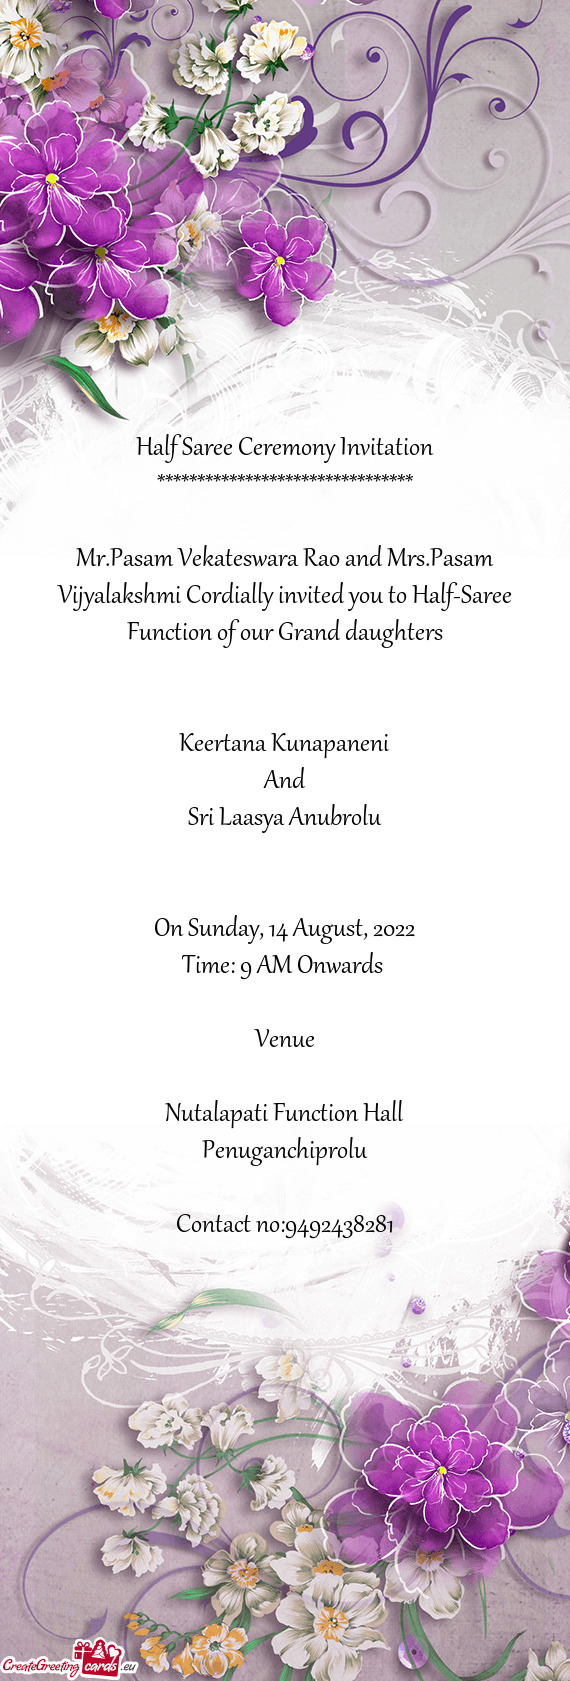 Mr.Pasam Vekateswara Rao and Mrs.Pasam Vijyalakshmi Cordially invited you to Half-Saree Function of